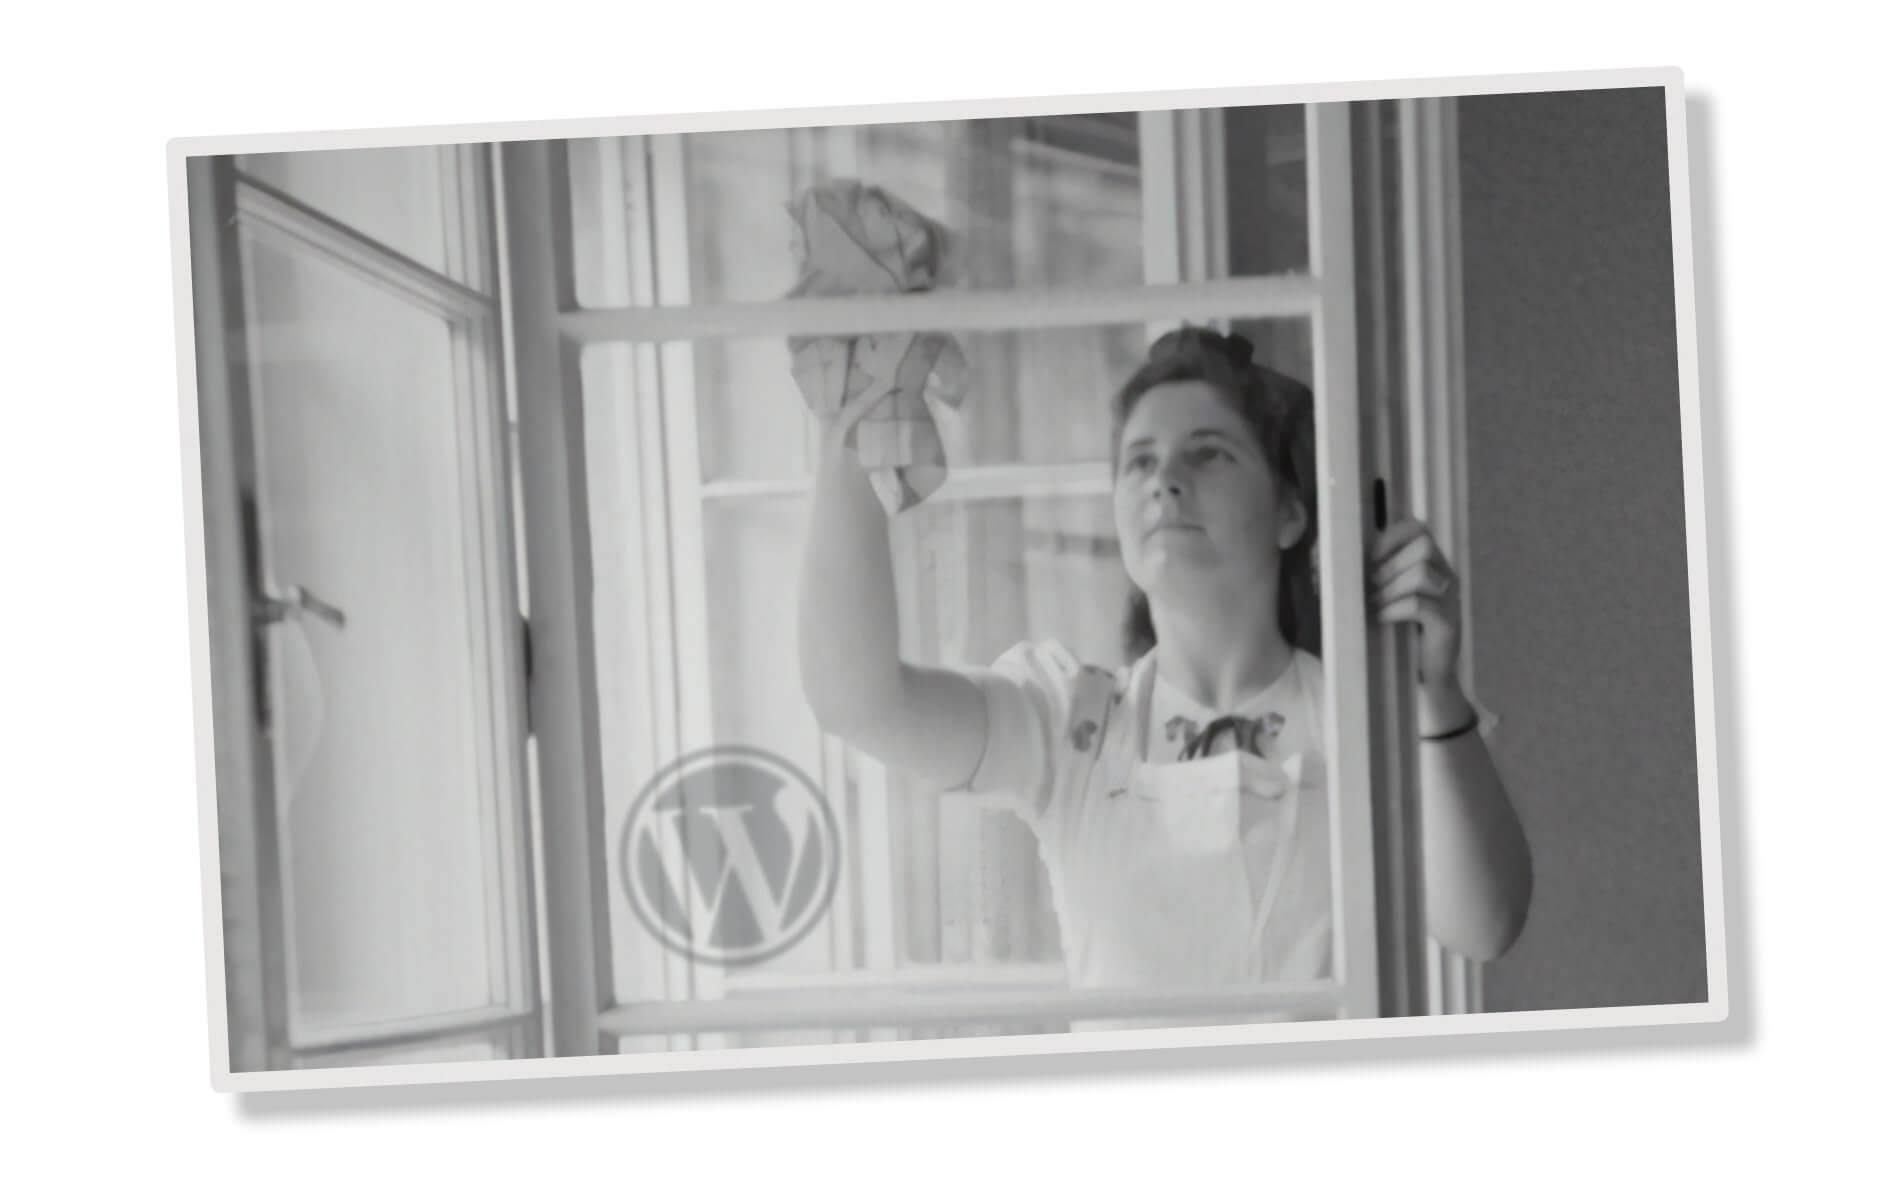 Schwarzweiß-Bild einer Fenster putzenden Frau, WordPress Logo links unten